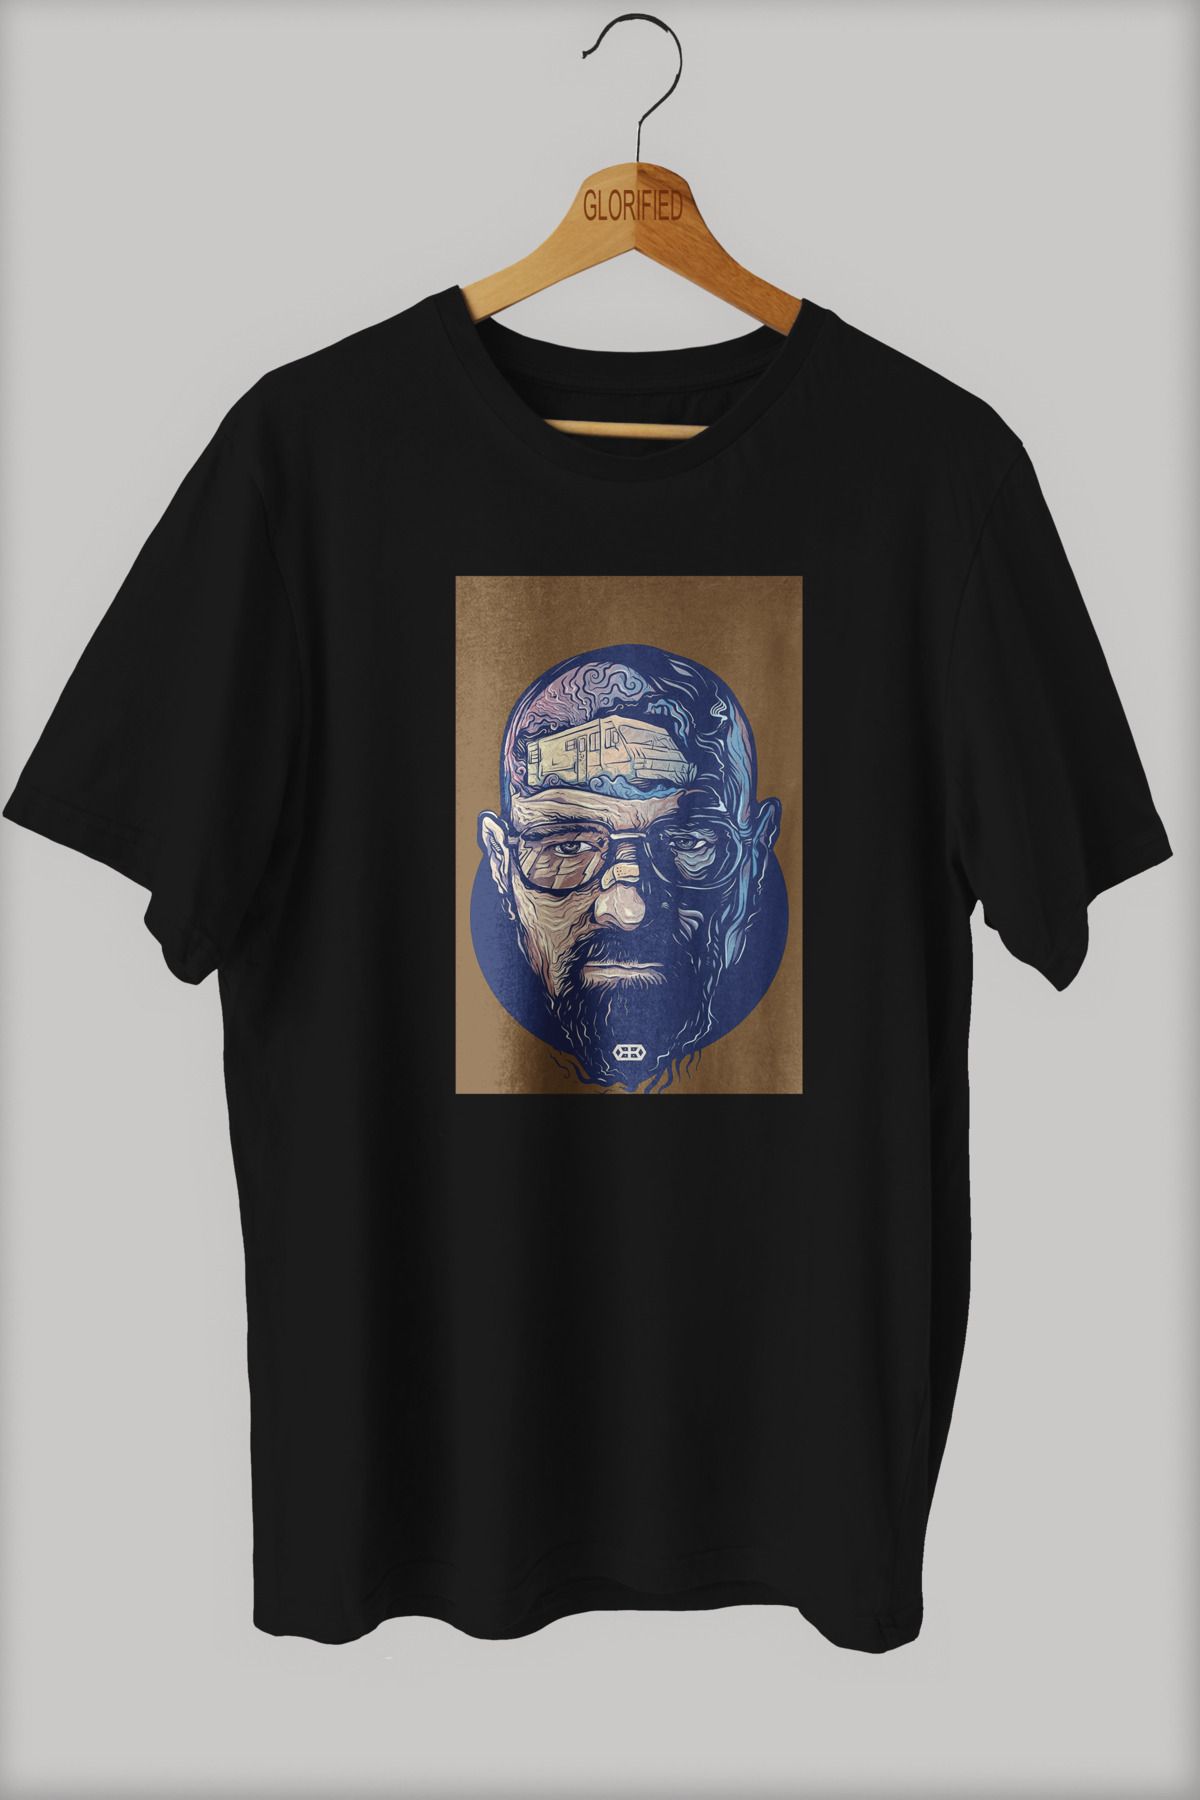 CB MAN COLLECTİON Heisenberg Tasarım Baskılı Oversize T-shirt ( Tişört ) %100 Cotton